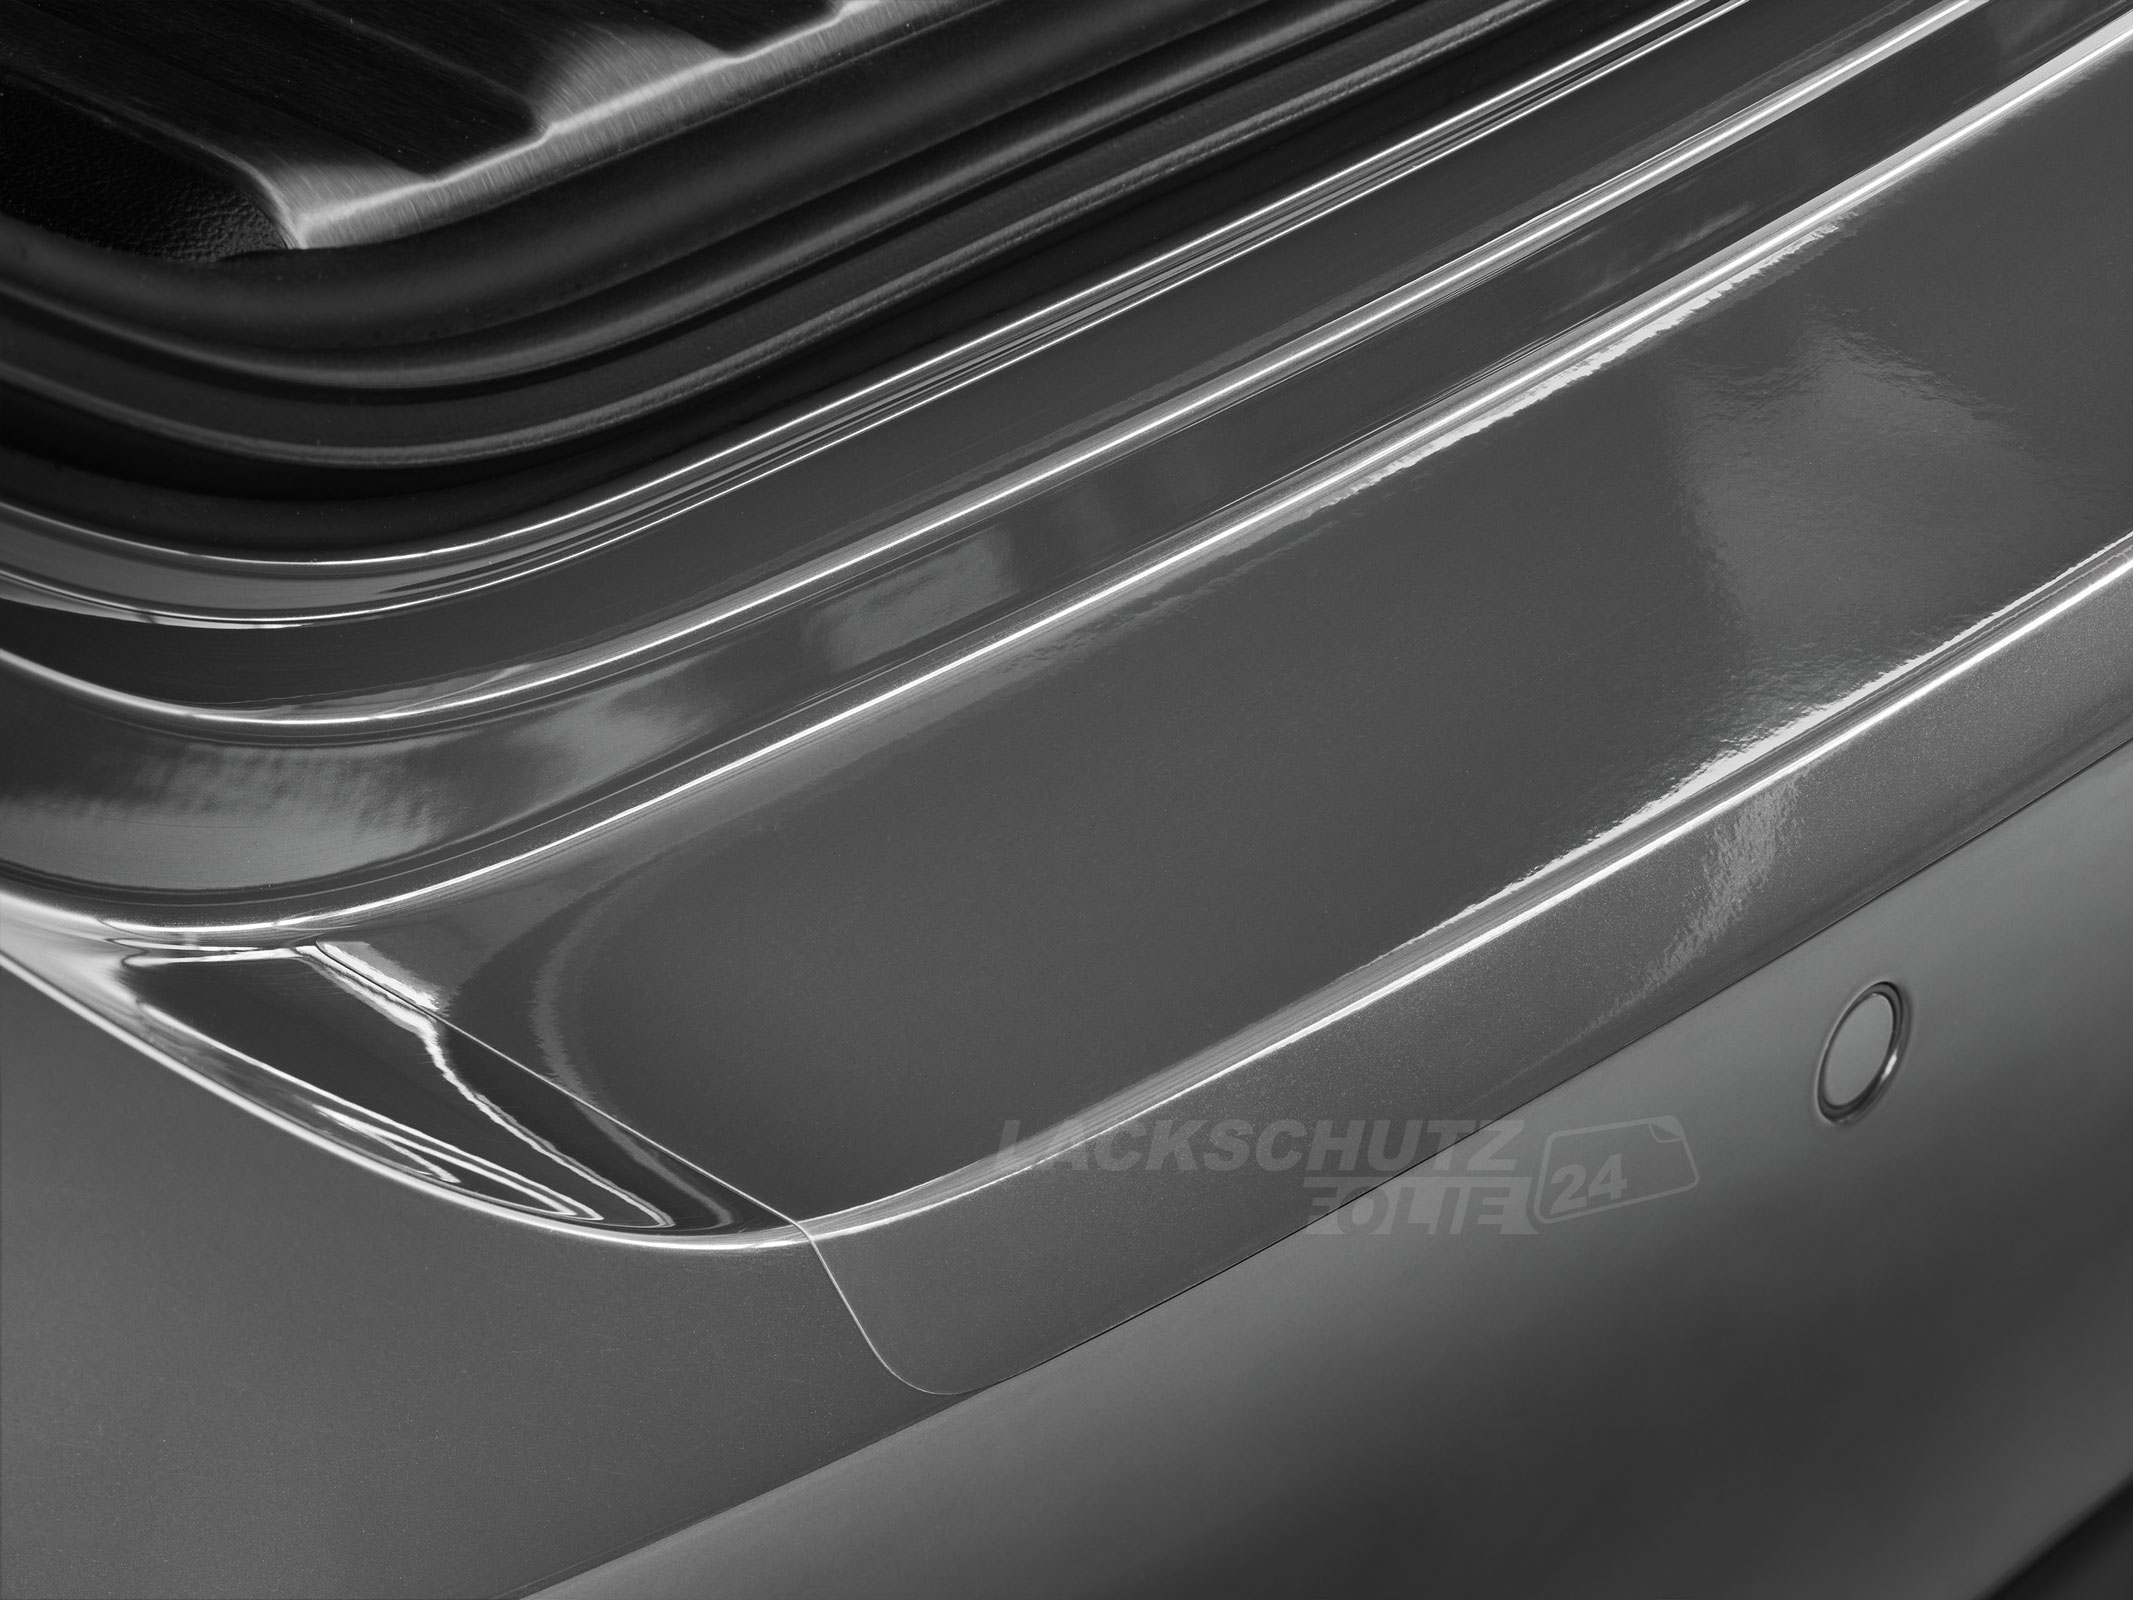 Ladekantenschutzfolie - Transparent Glatt Hochglänzend für Suzuki Grand Vitara Typ JT, BJ 2005-2015